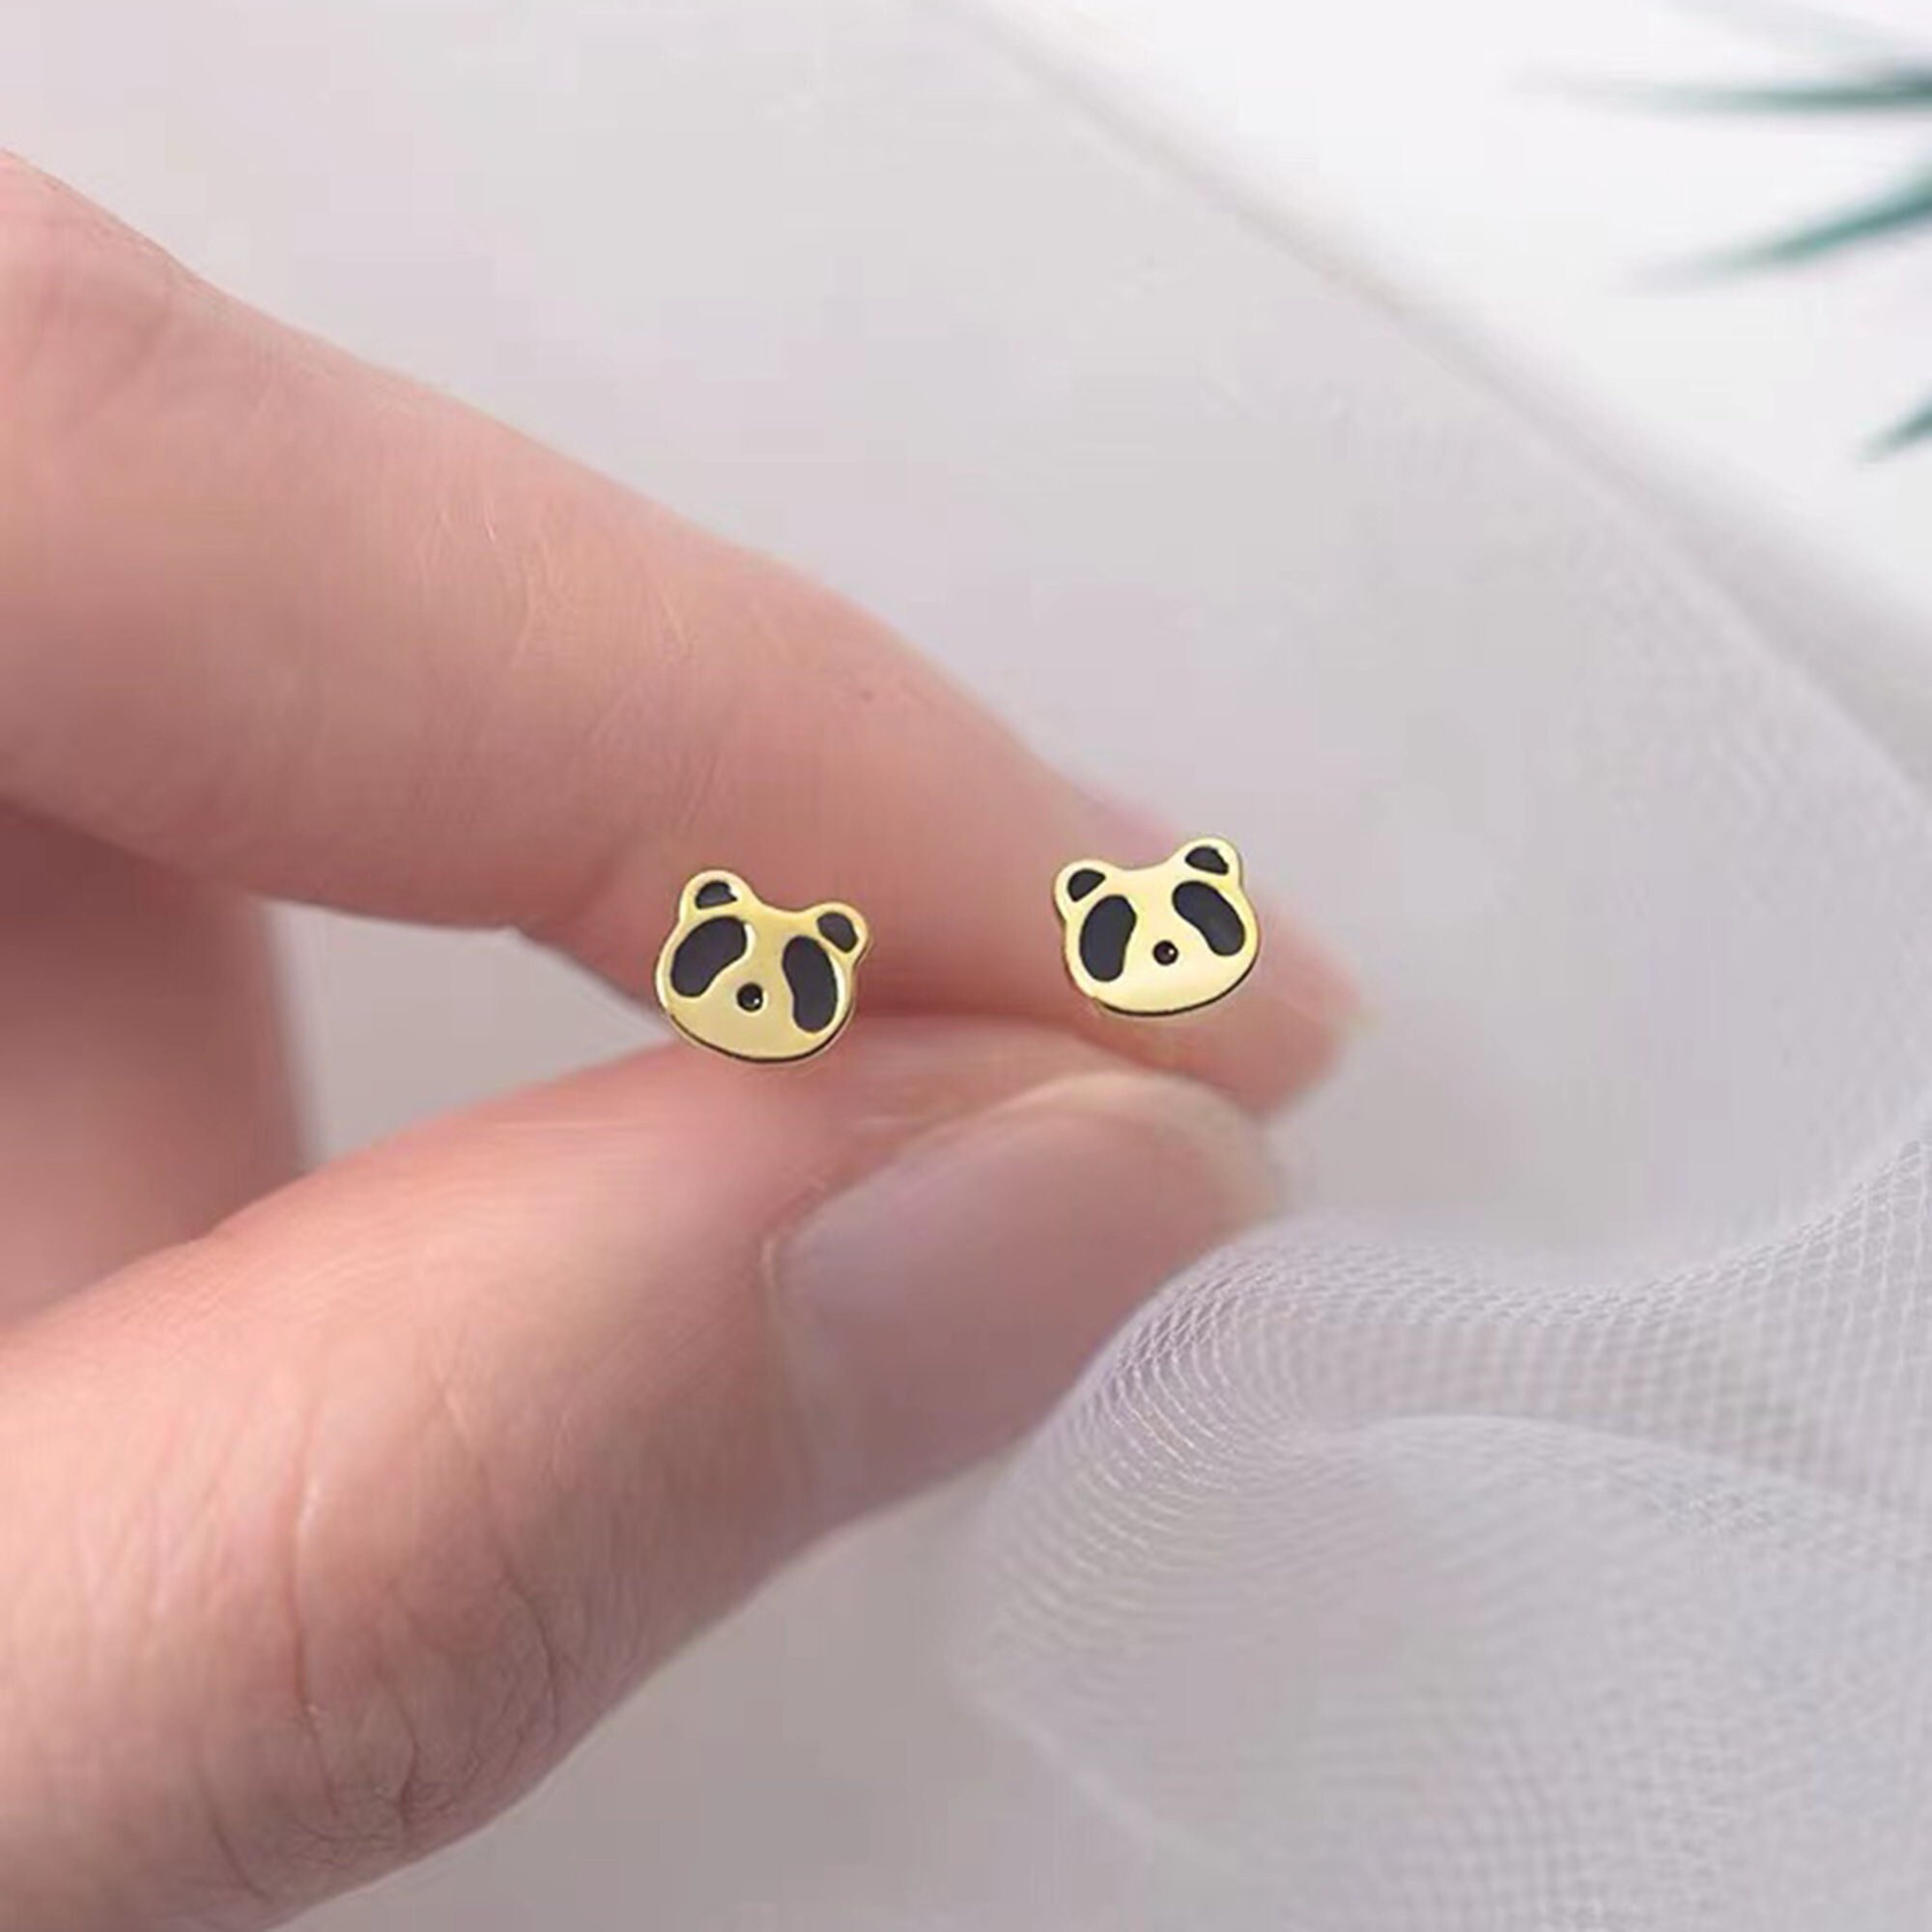 Buy Buy Silver Earrings For Women Playful Panda Earrings Online  TALISMAN